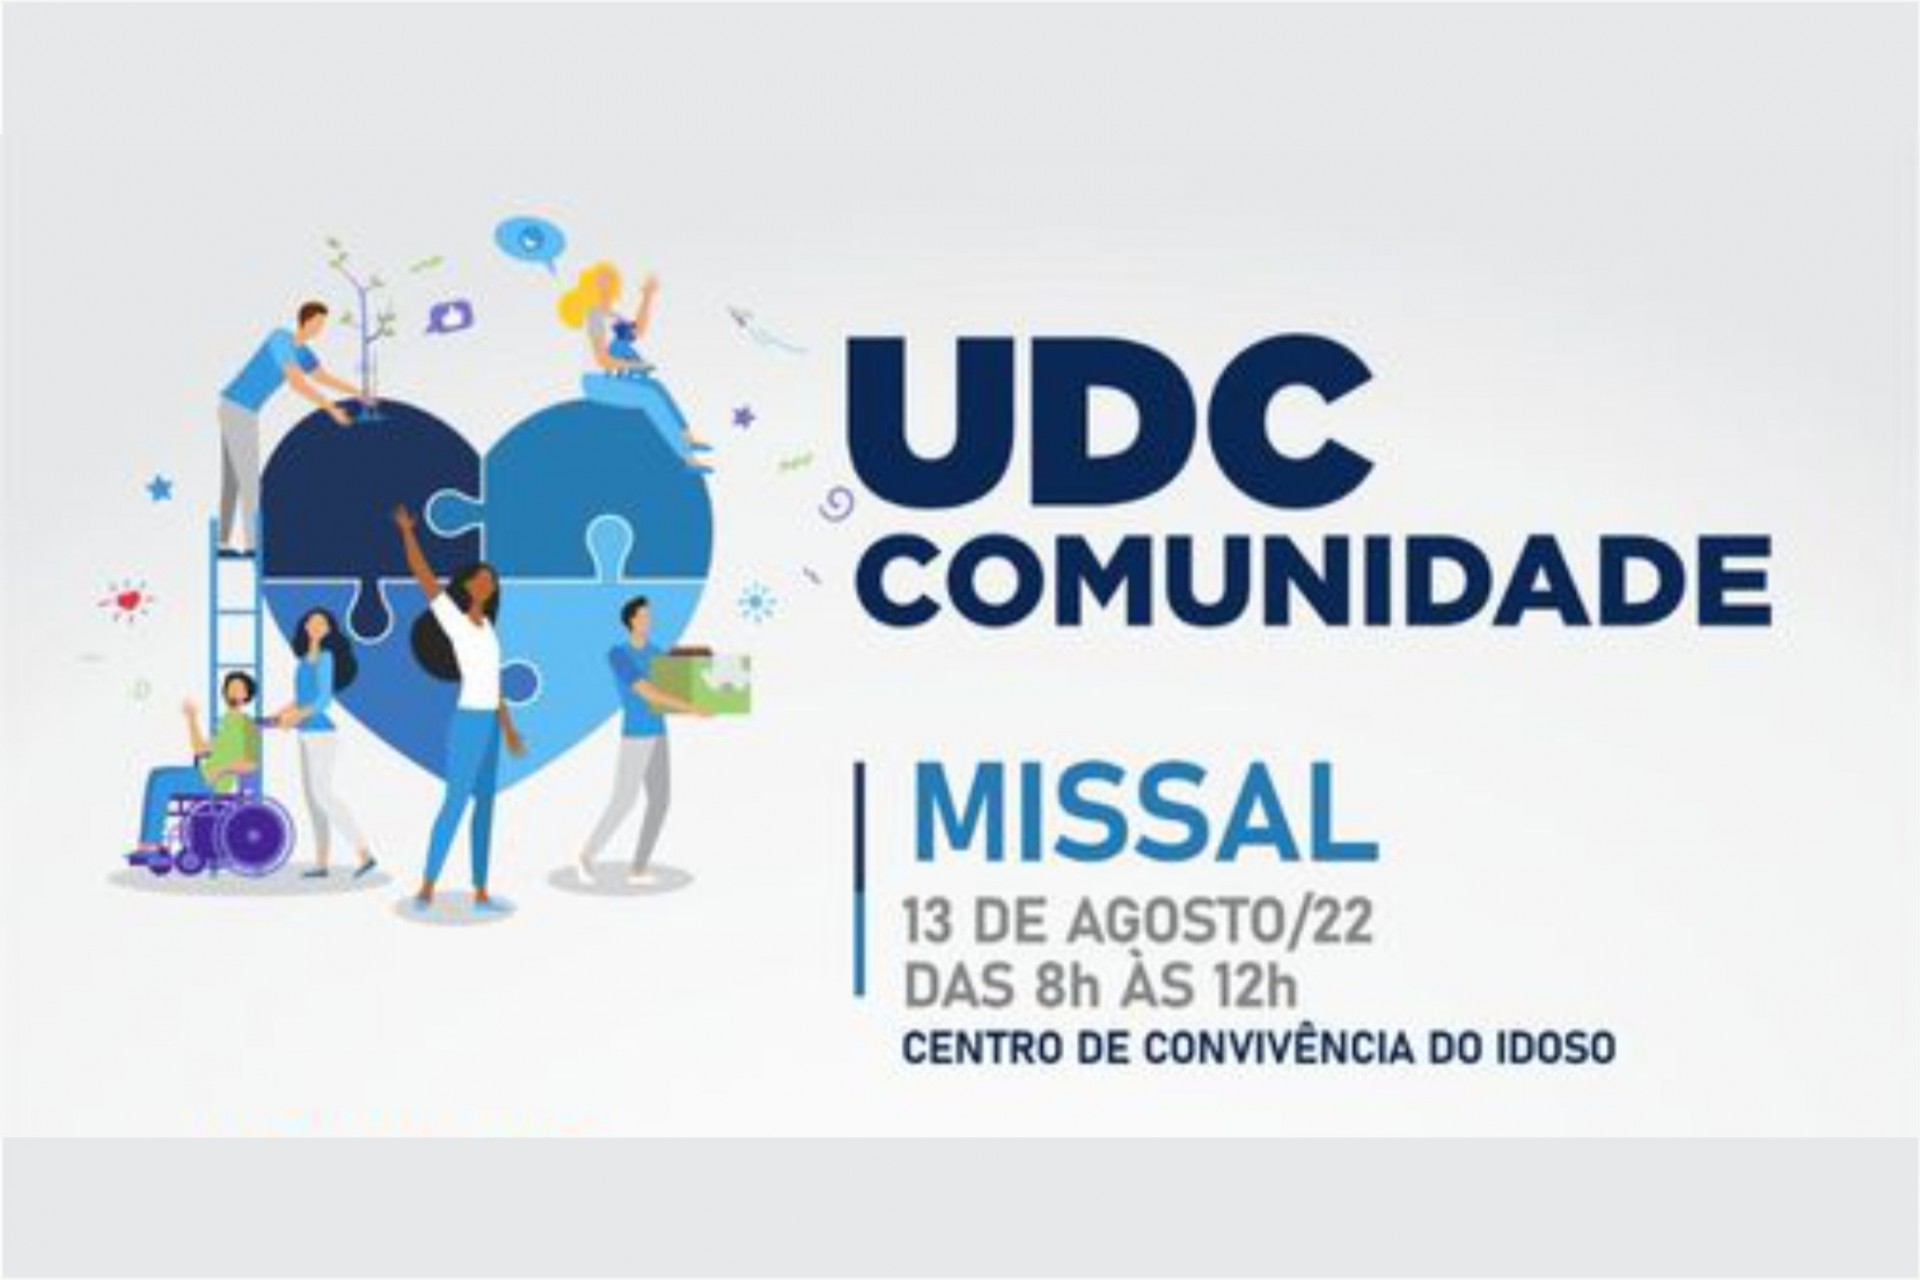 Parceria com a UDC vai proporcionar atendimentos a comunidade neste sábado em Missal